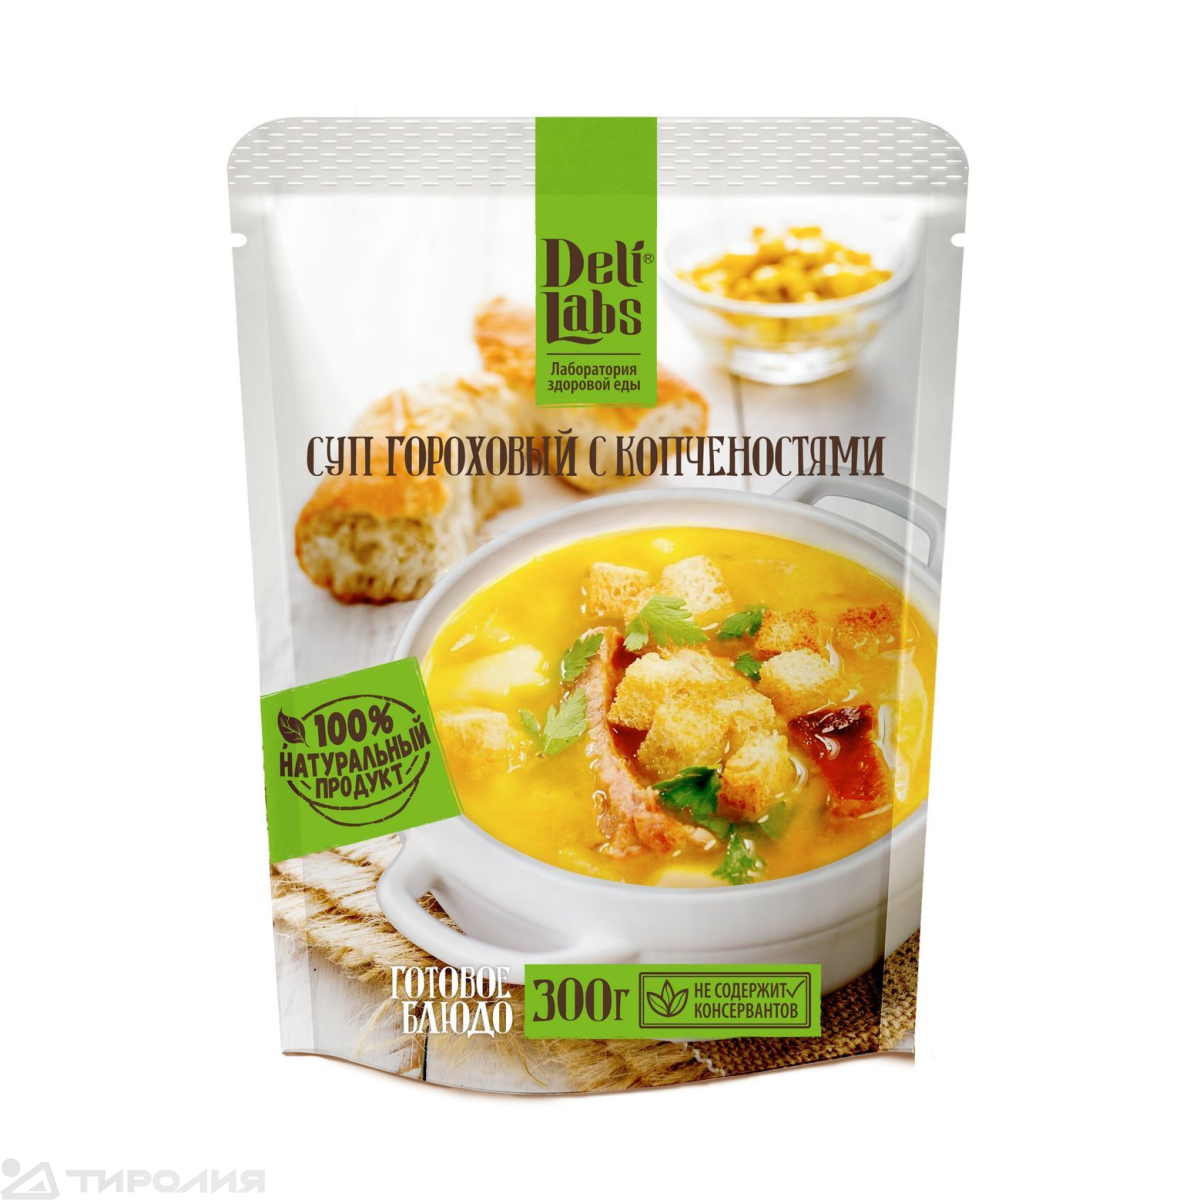 Блюдо готовое Deli Labs: Суп гороховый с копченостями пакет 300 г.